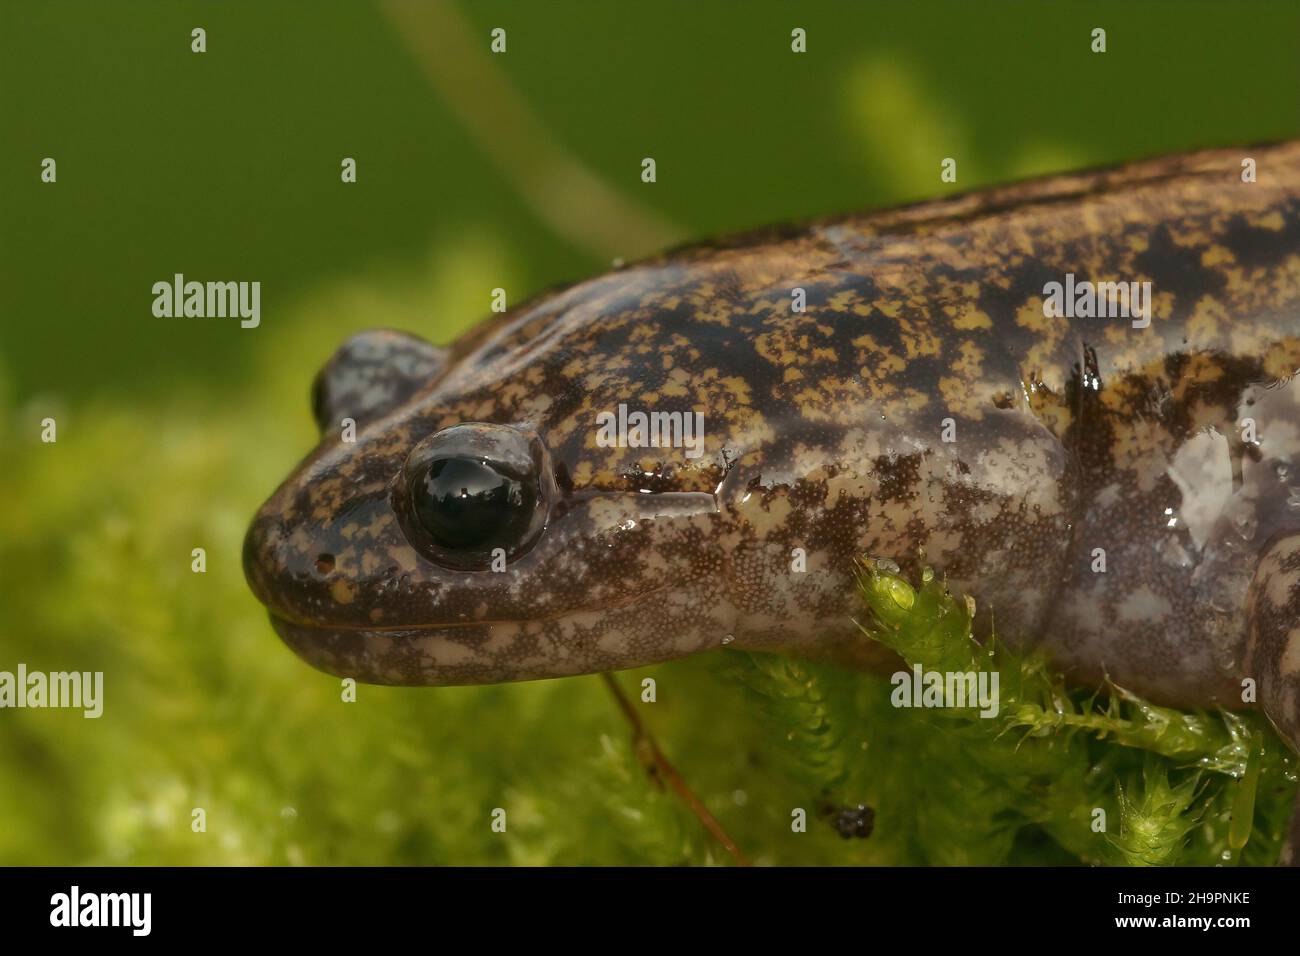 Closeup on the rare Japanese Hondo streamside salamander, Hynobius kimura Stock Photo